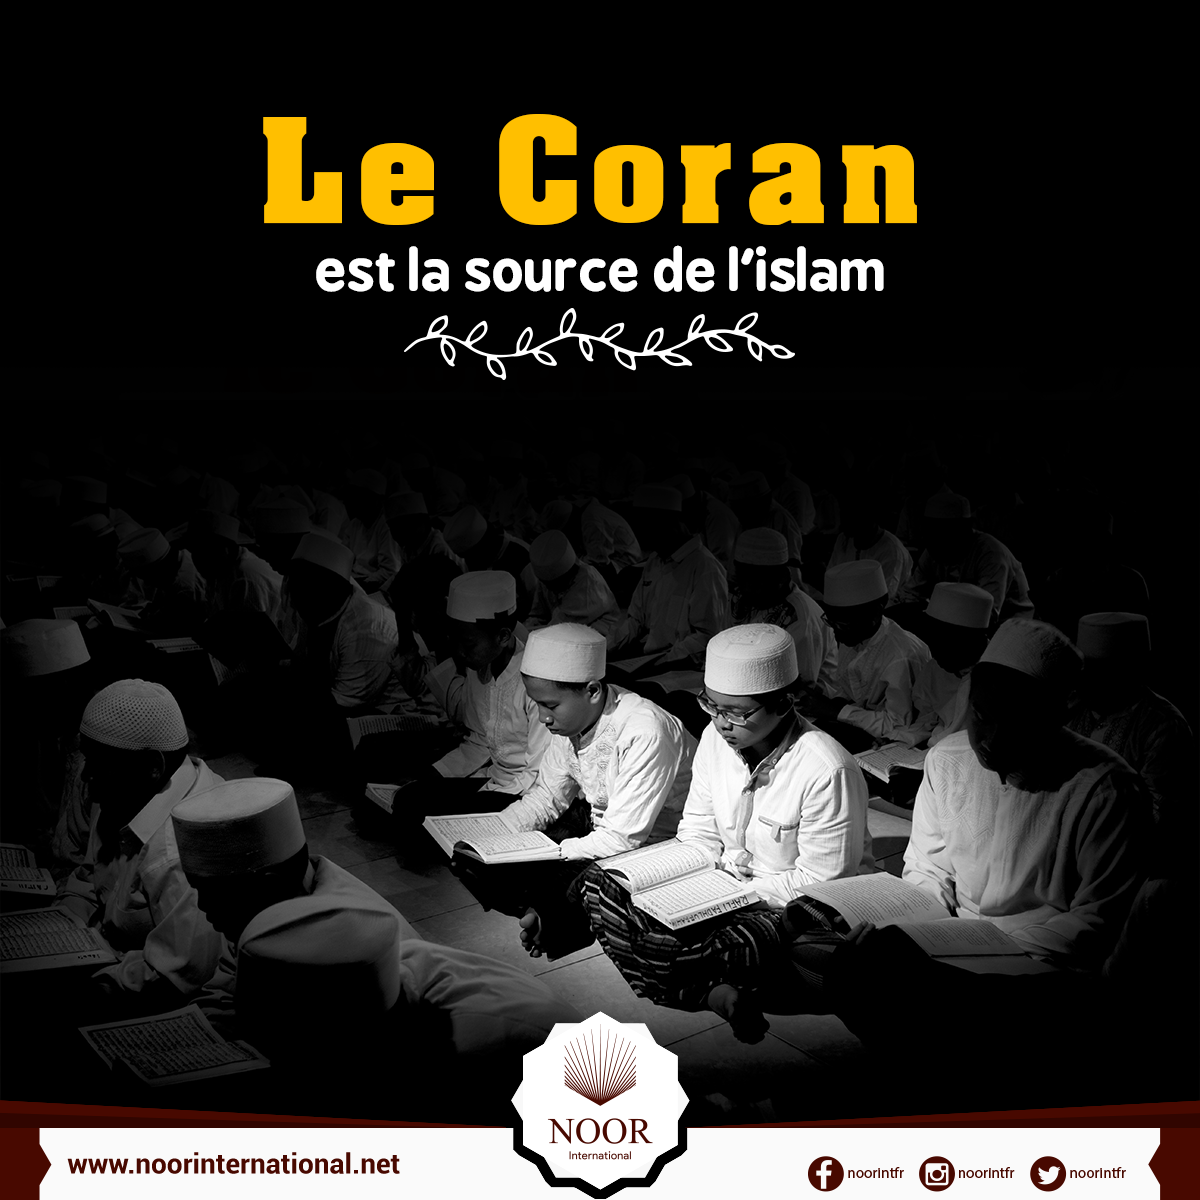 Le Coran est la source de l'islam